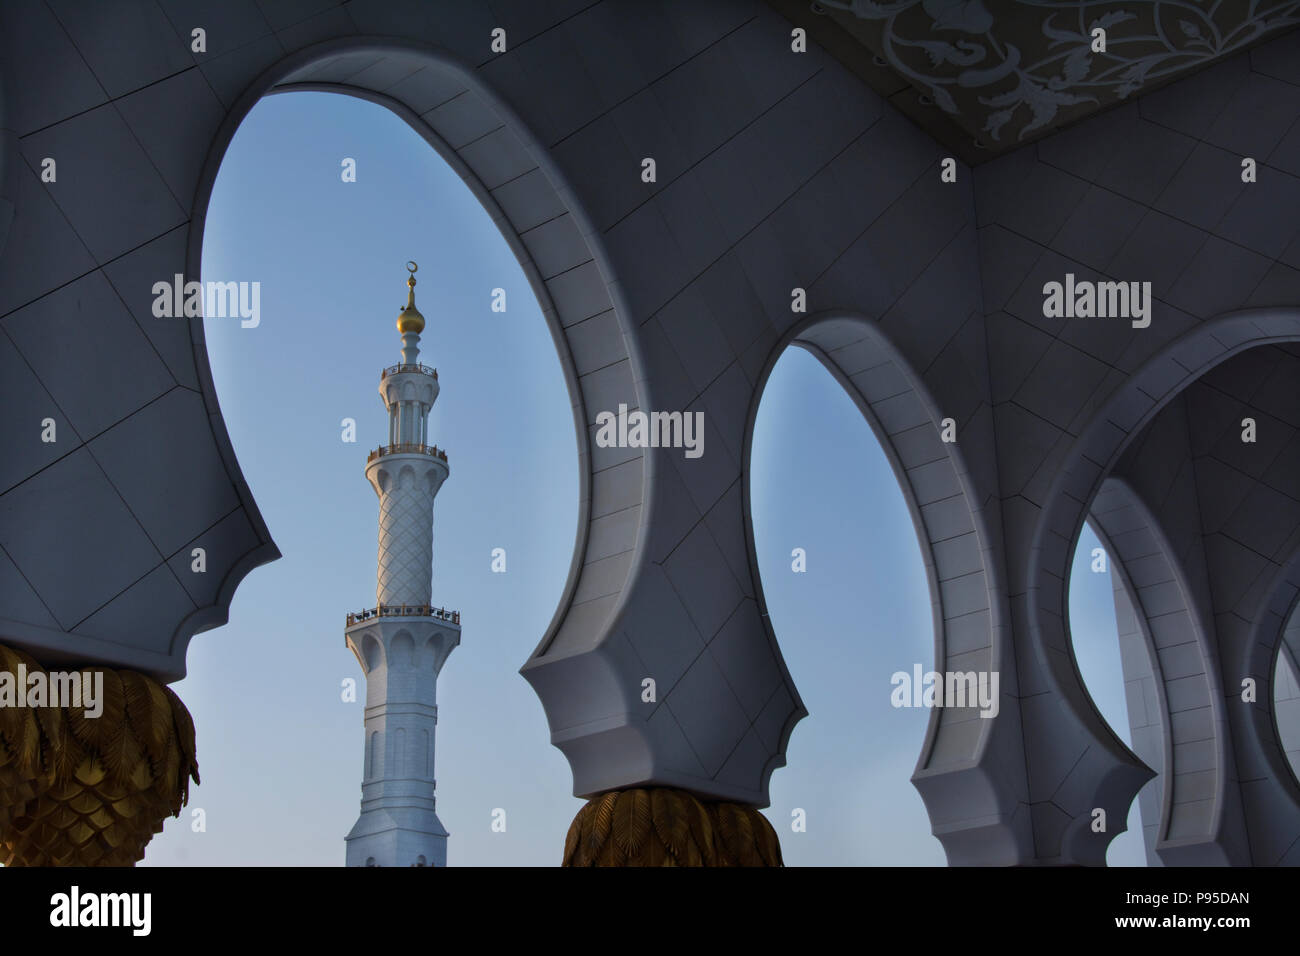 United Arab Emirates, UAE, Abu Dhabi City, Sheikh Zayed Grand Mosque,  constructed 1996 - 2007 Stock Photo